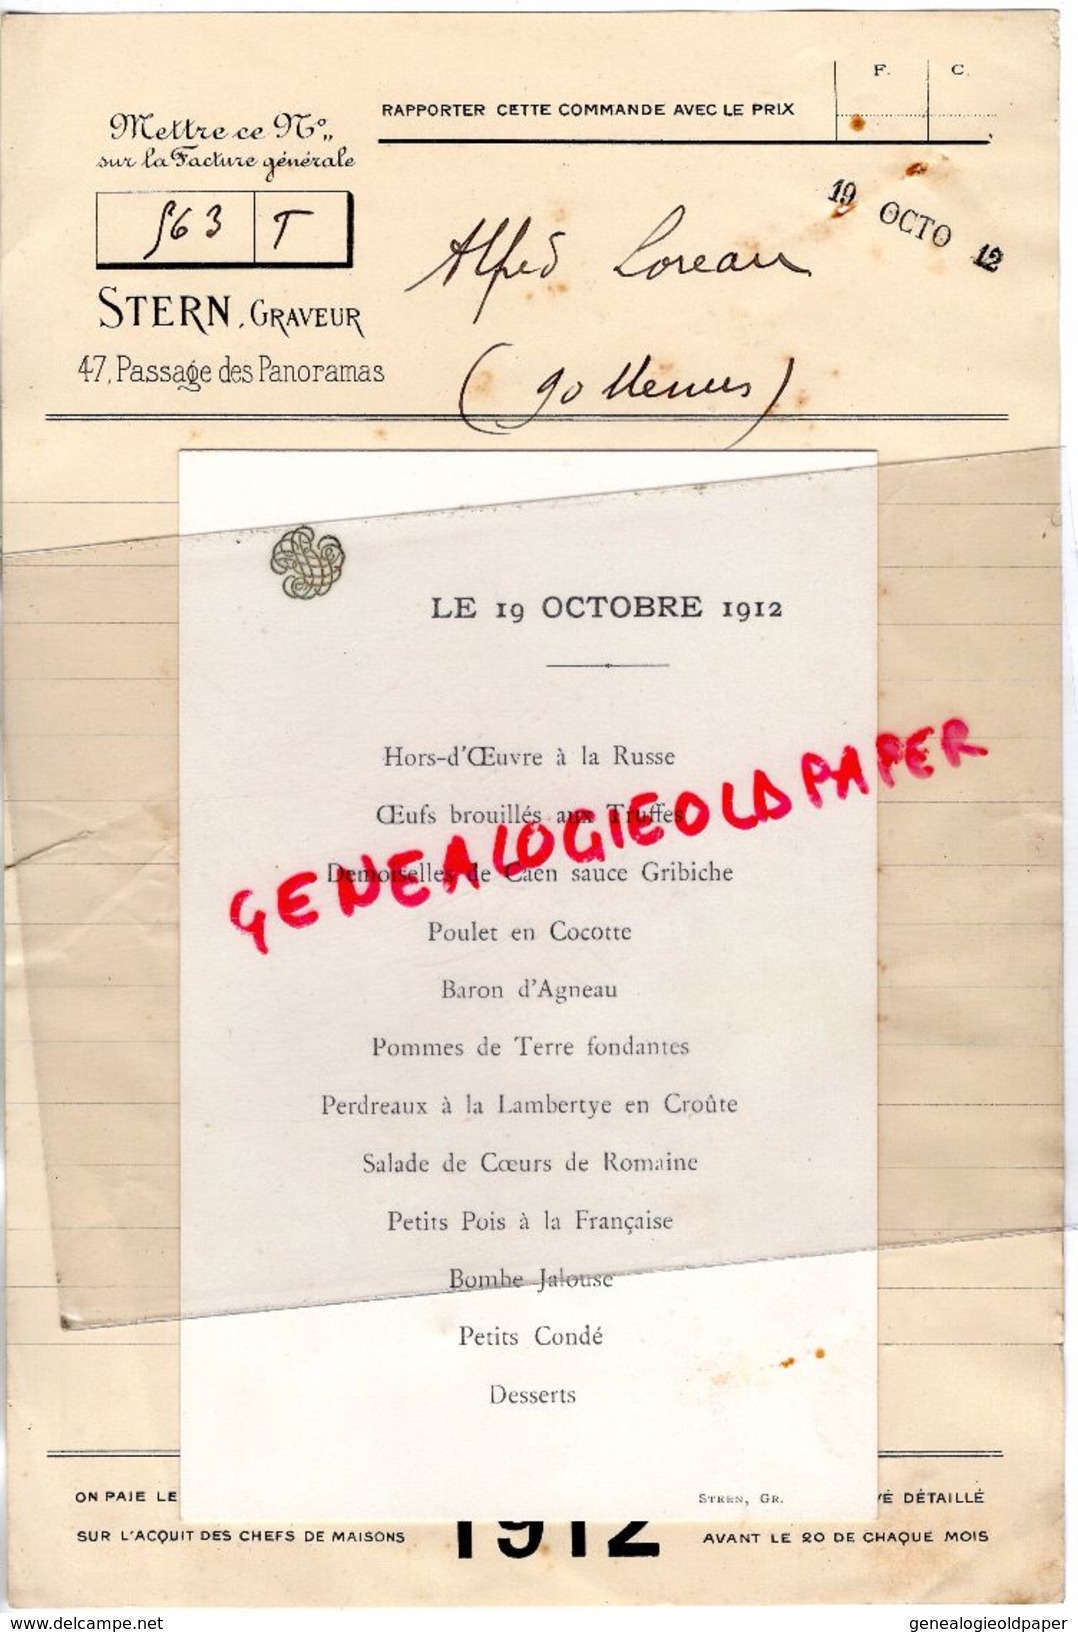 75- PARIS- COMMANDE CARTE MENU DE ALFRED LOREAU A STERN GRAVEUR -47 PASSAGE PANORAMAS- 1912 IMPRIMERIE - Drukkerij & Papieren